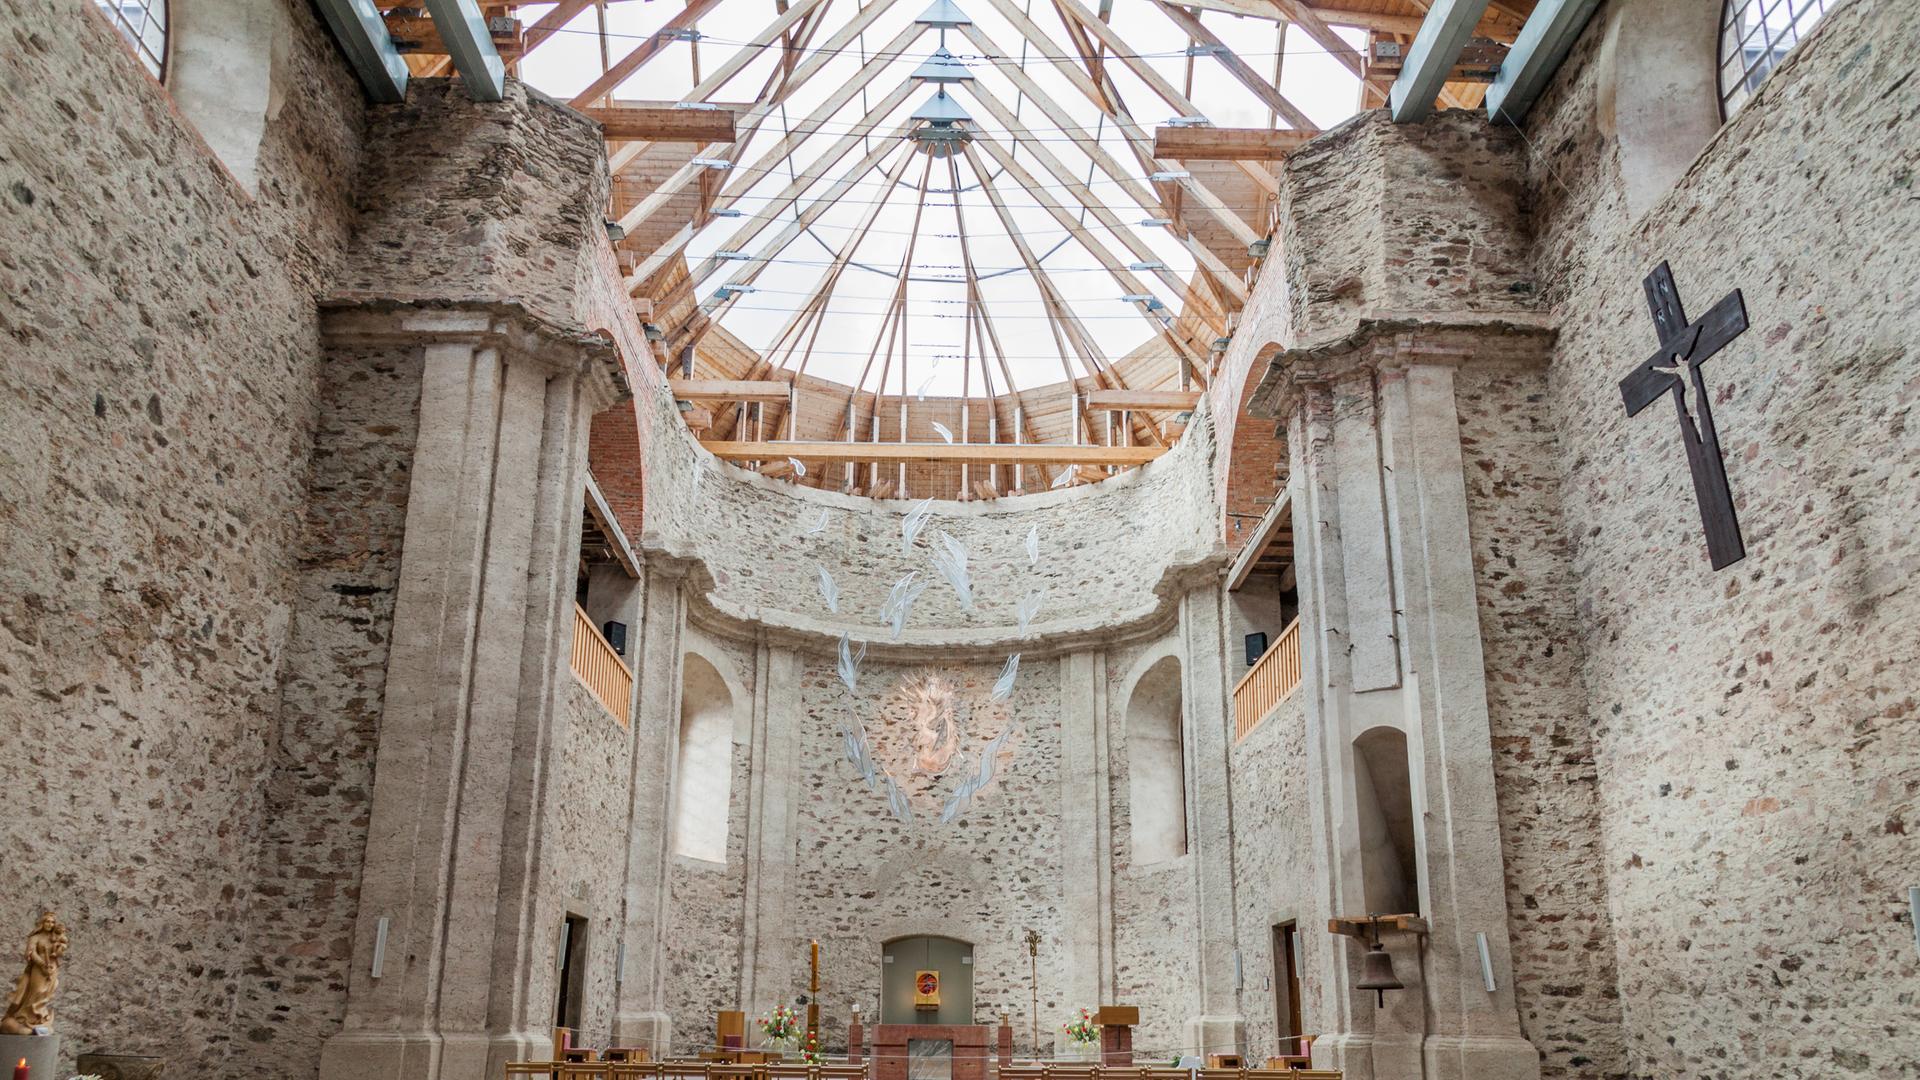 Das Innere der Maria Himmelfahrtskirche, Neratov im Orlicke-Gebirge, Tschechische Republik.